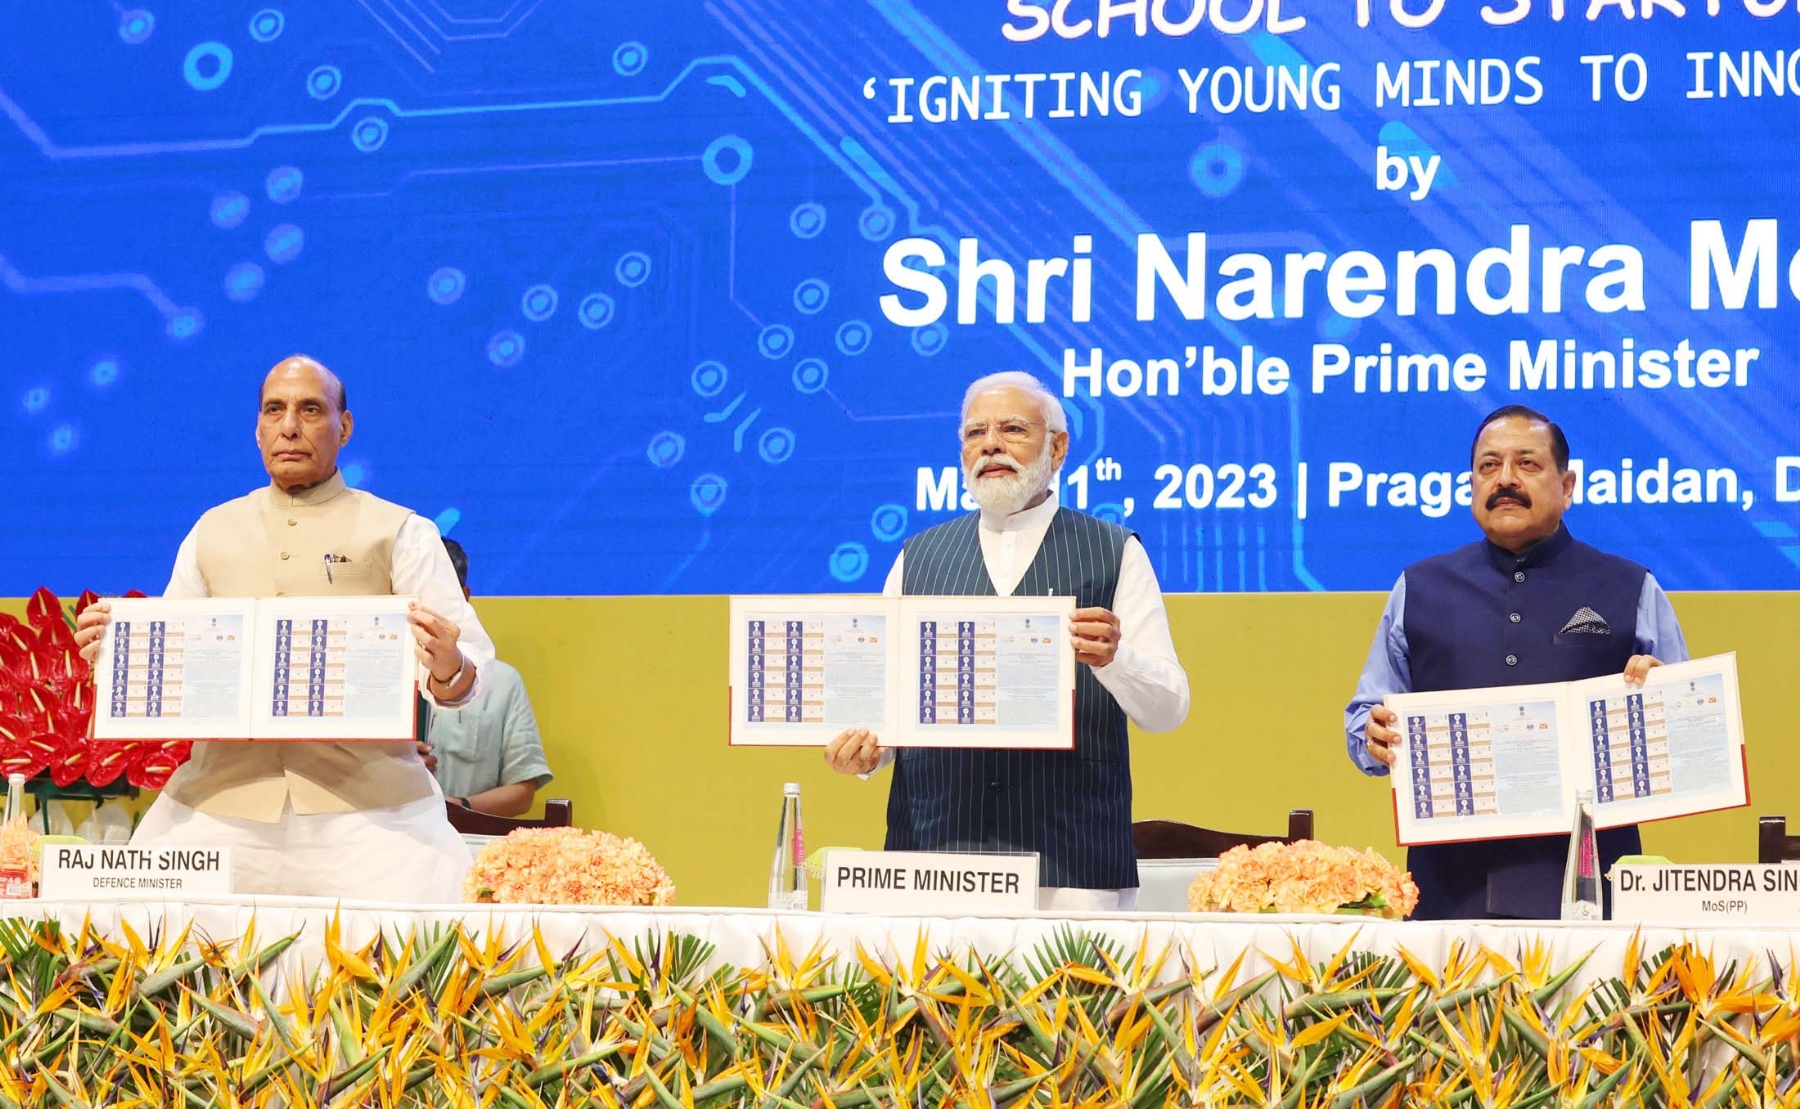 नई दिल्ली में गुरुवार 11 मई को प्रधानमंत्री नरेन्द्र मोदी ने राष्ट्रीय प्रौद्योगिकी दिवस 2023 के अवसर पर विभिन्न परियोजनाओं के उद्घाटन और शिलान्यास के बाद सभा को संबोधित करते हुए। हिंदुस्तान समाचार फोटो गणेश बिष्ट